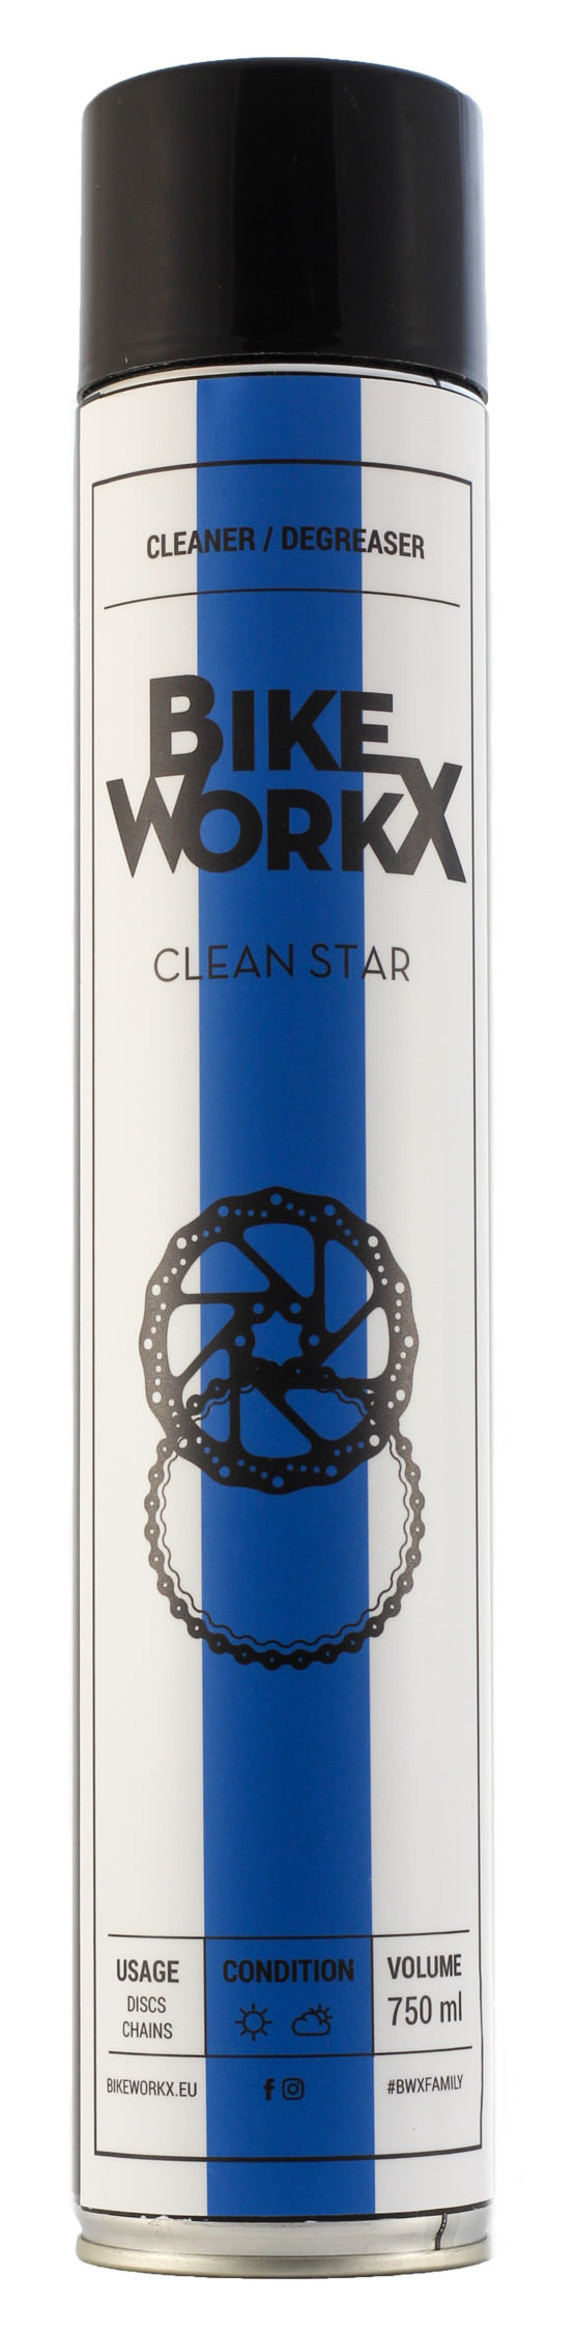 Очиститель BikeWorkX Clean Star спрей 750 мл